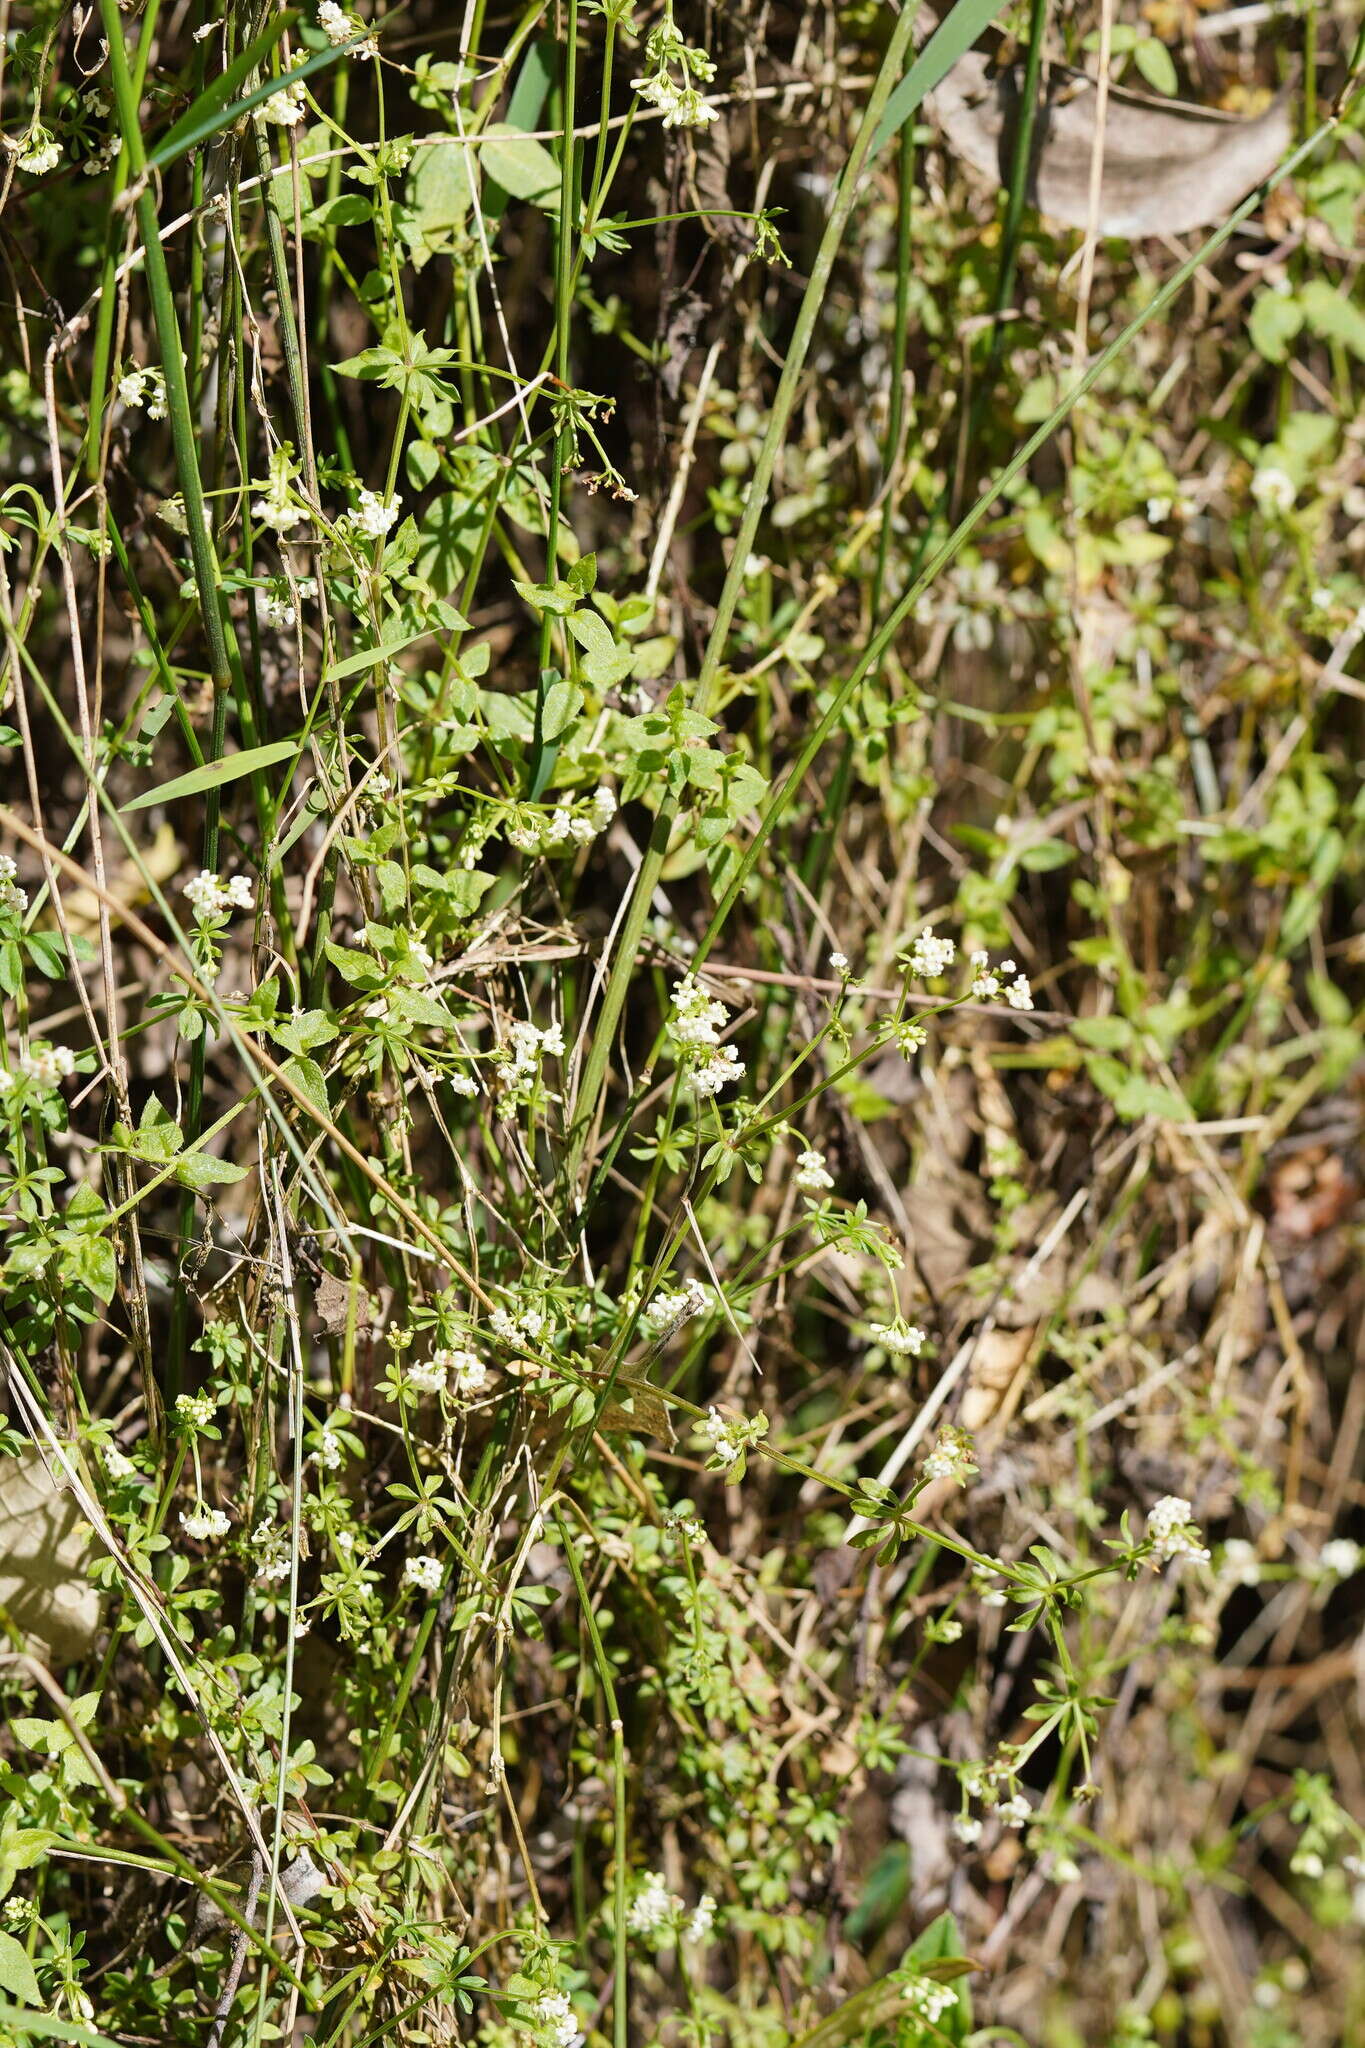 Plancia ëd Asperula euryphylla Airy Shaw & Turrill